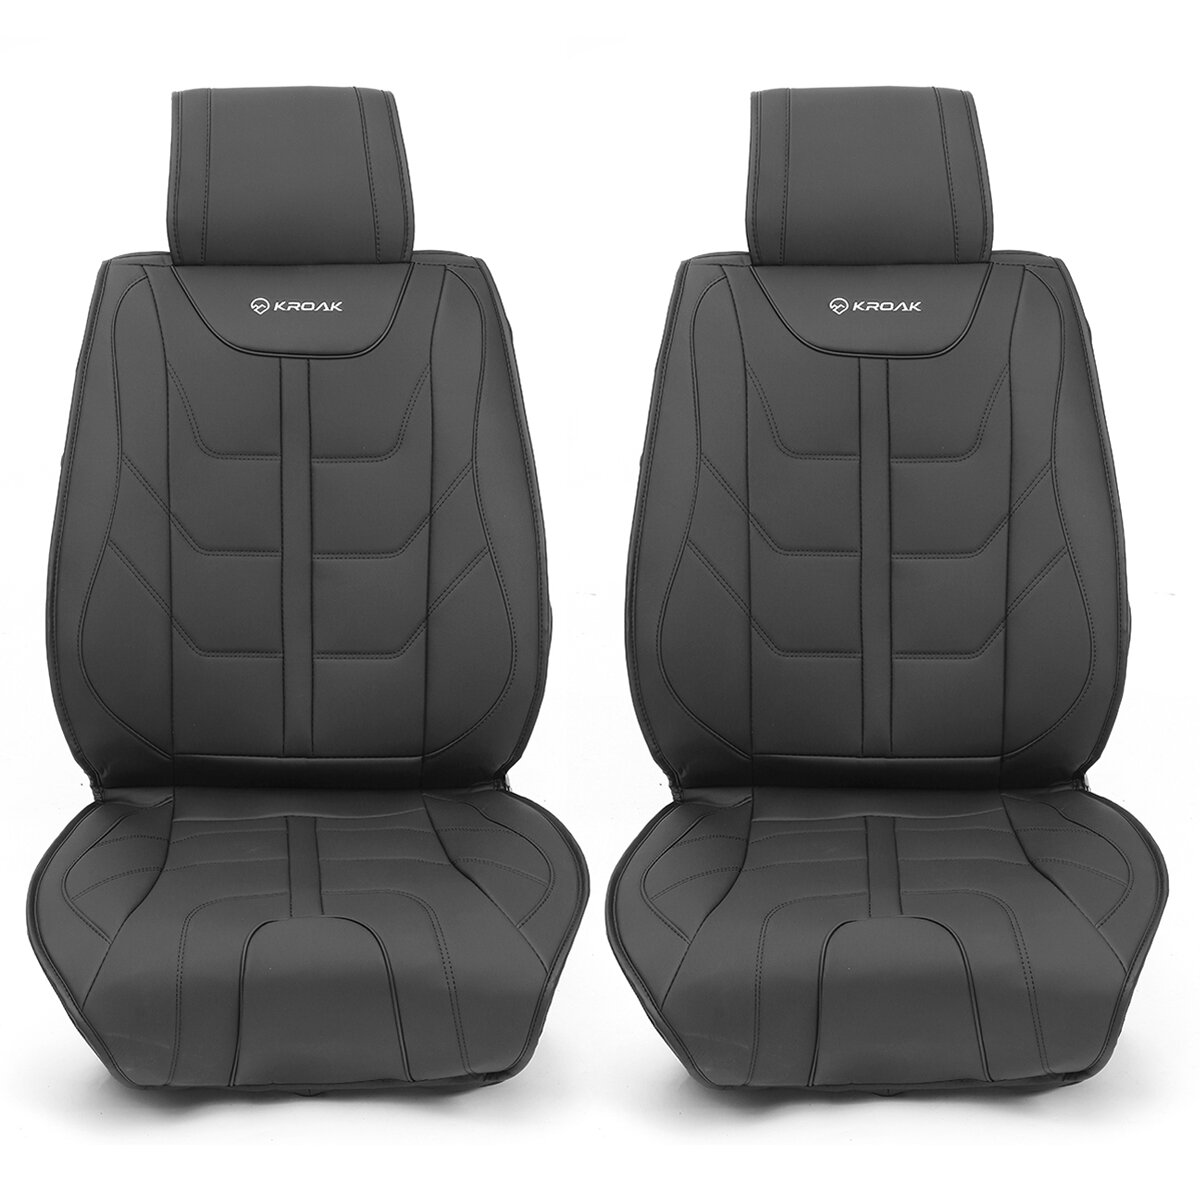 Στα 29.09 € από αποθήκη Πολωνίας | KROAK 2PCS Universal PU Nappa Leather Car Front Left Right Seat Cover Breathable Soft Four Seasons